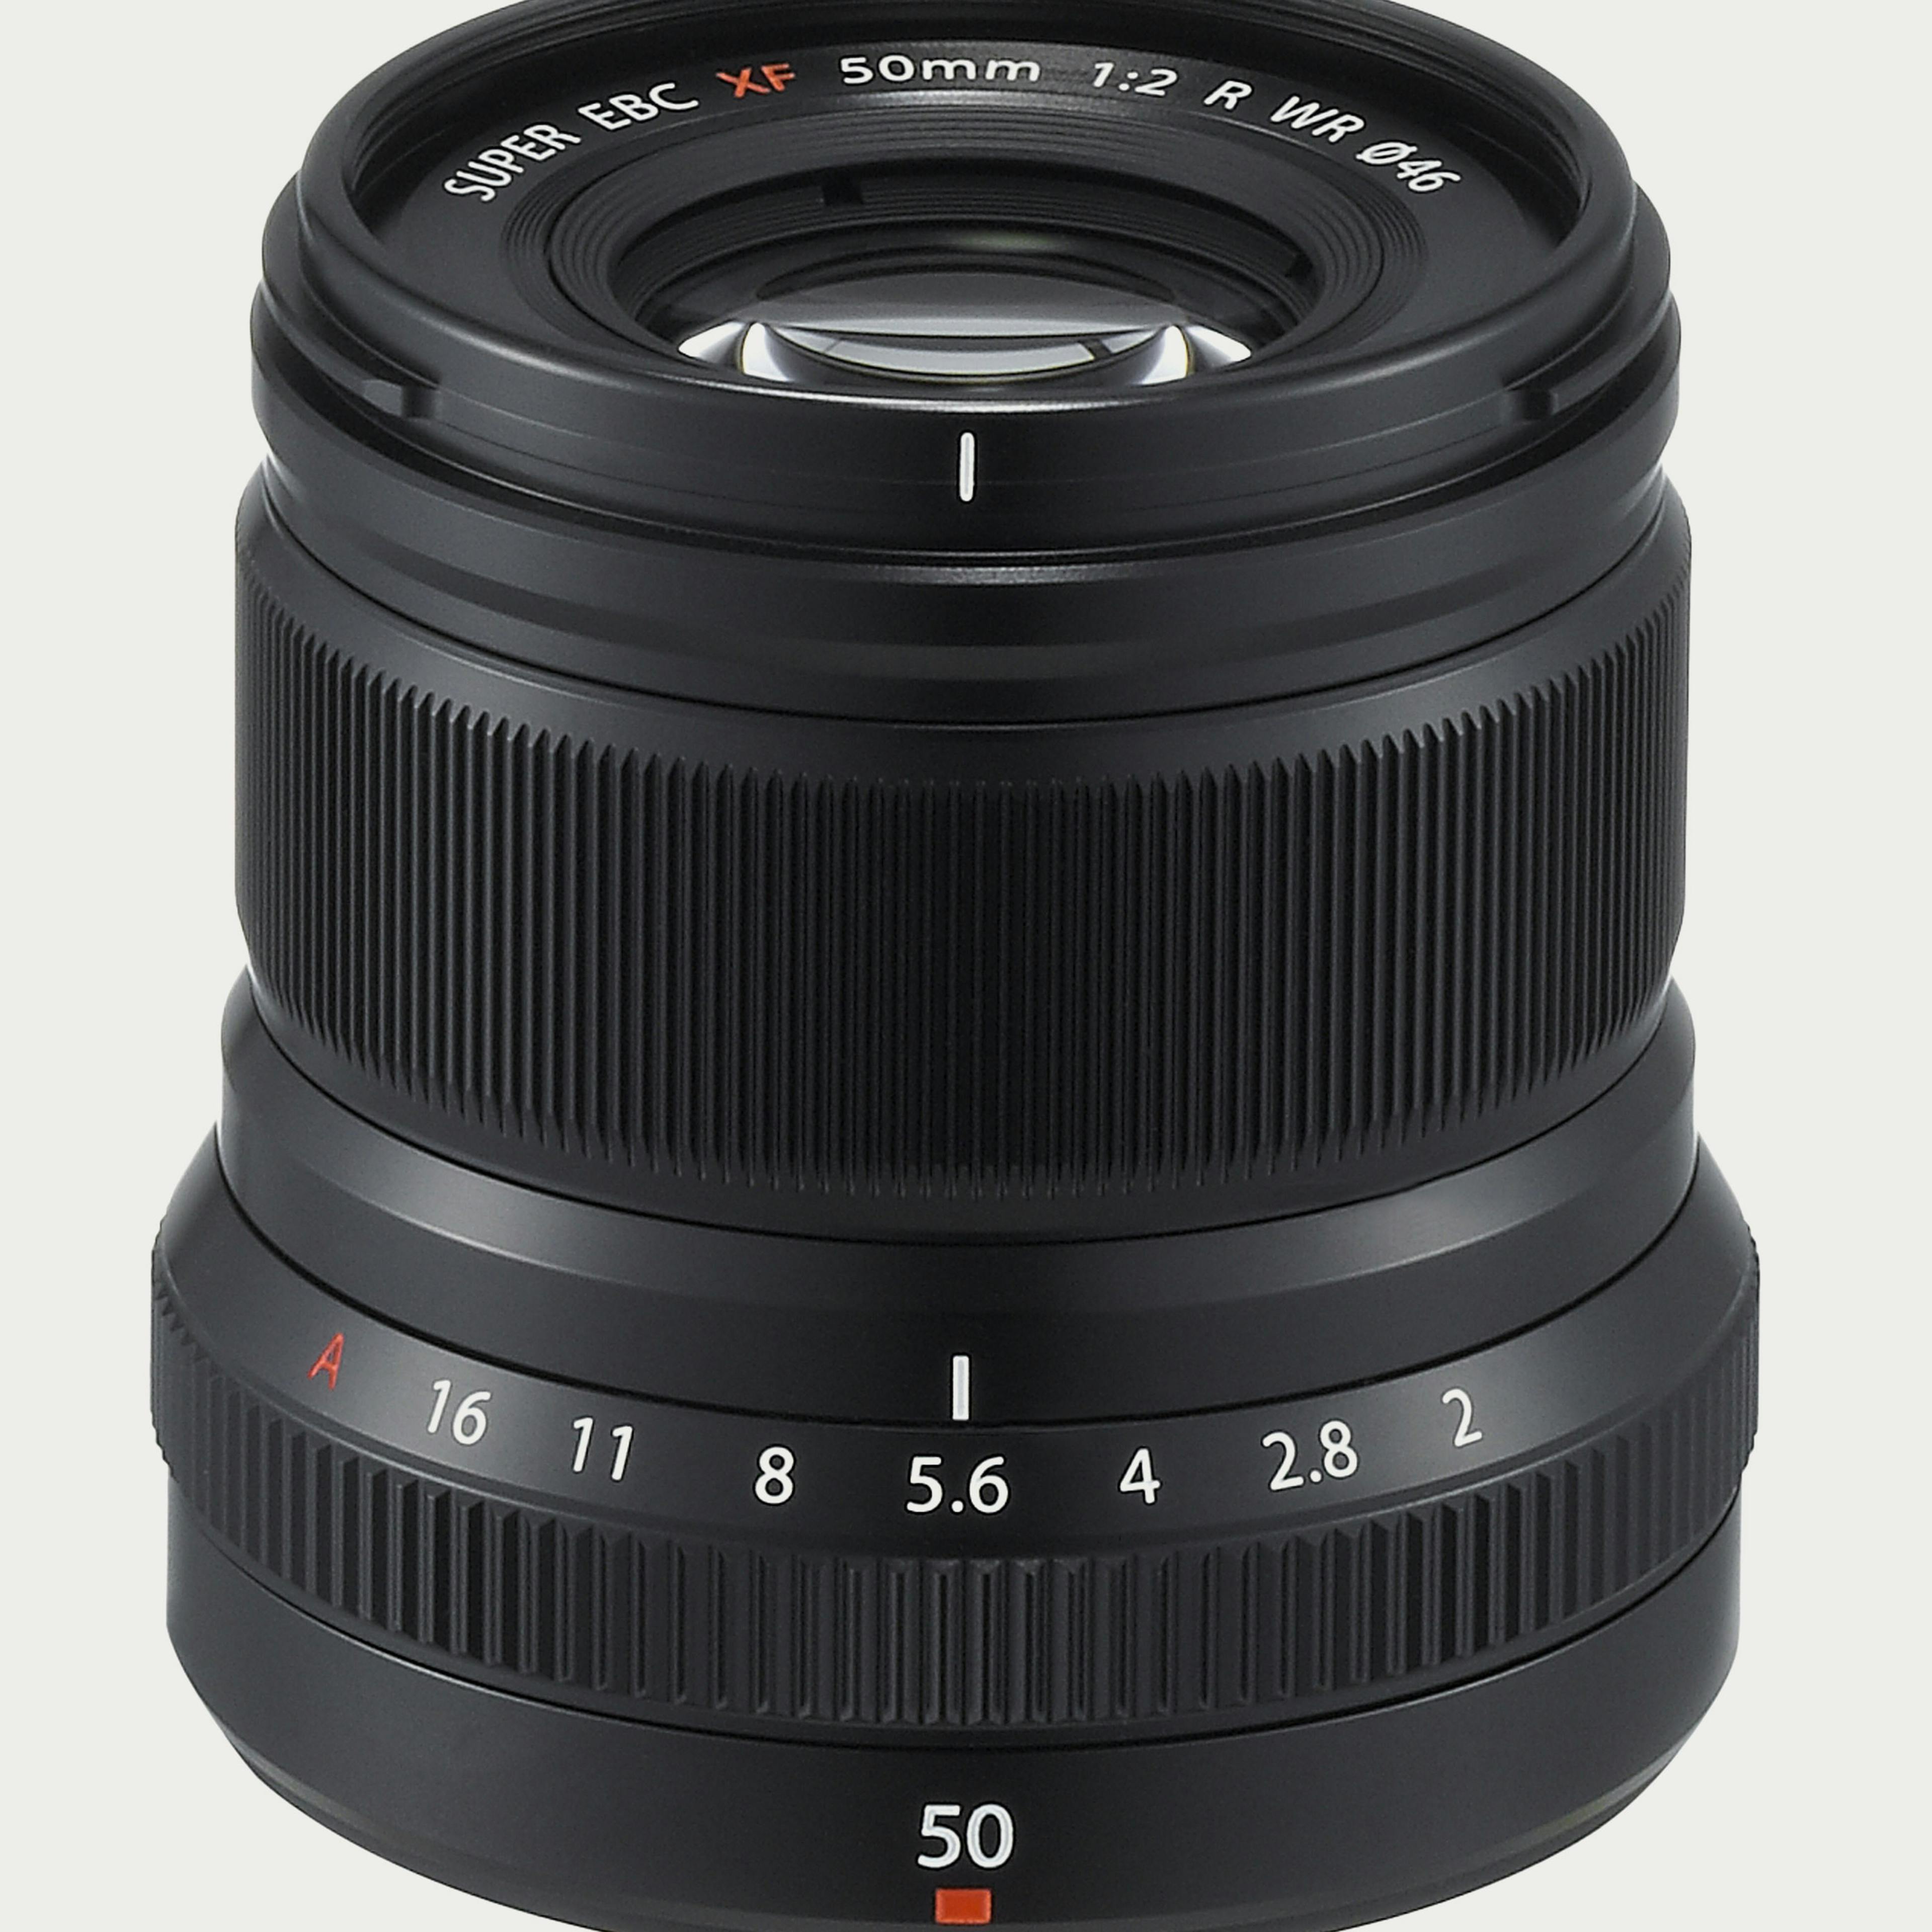 XF 50mm F2 R WR Lens